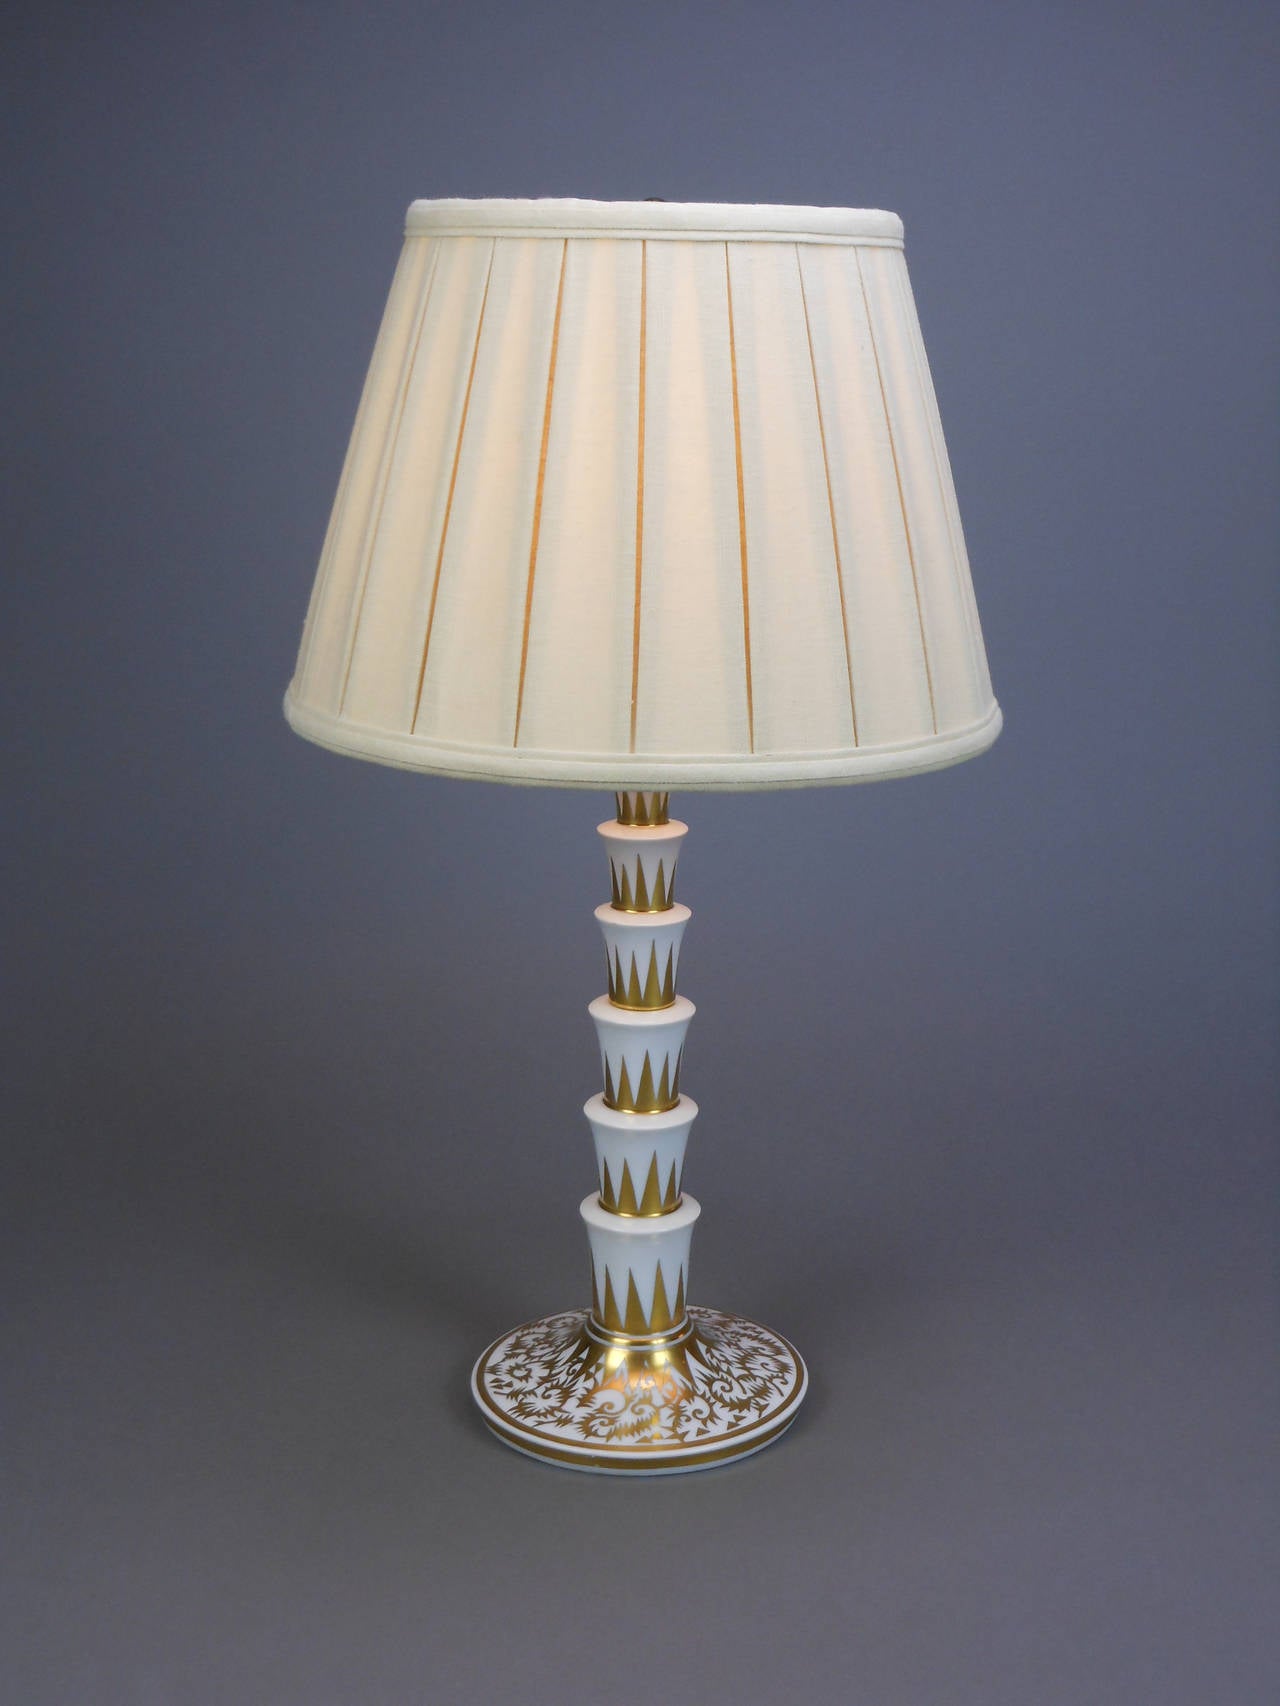 lamp in german